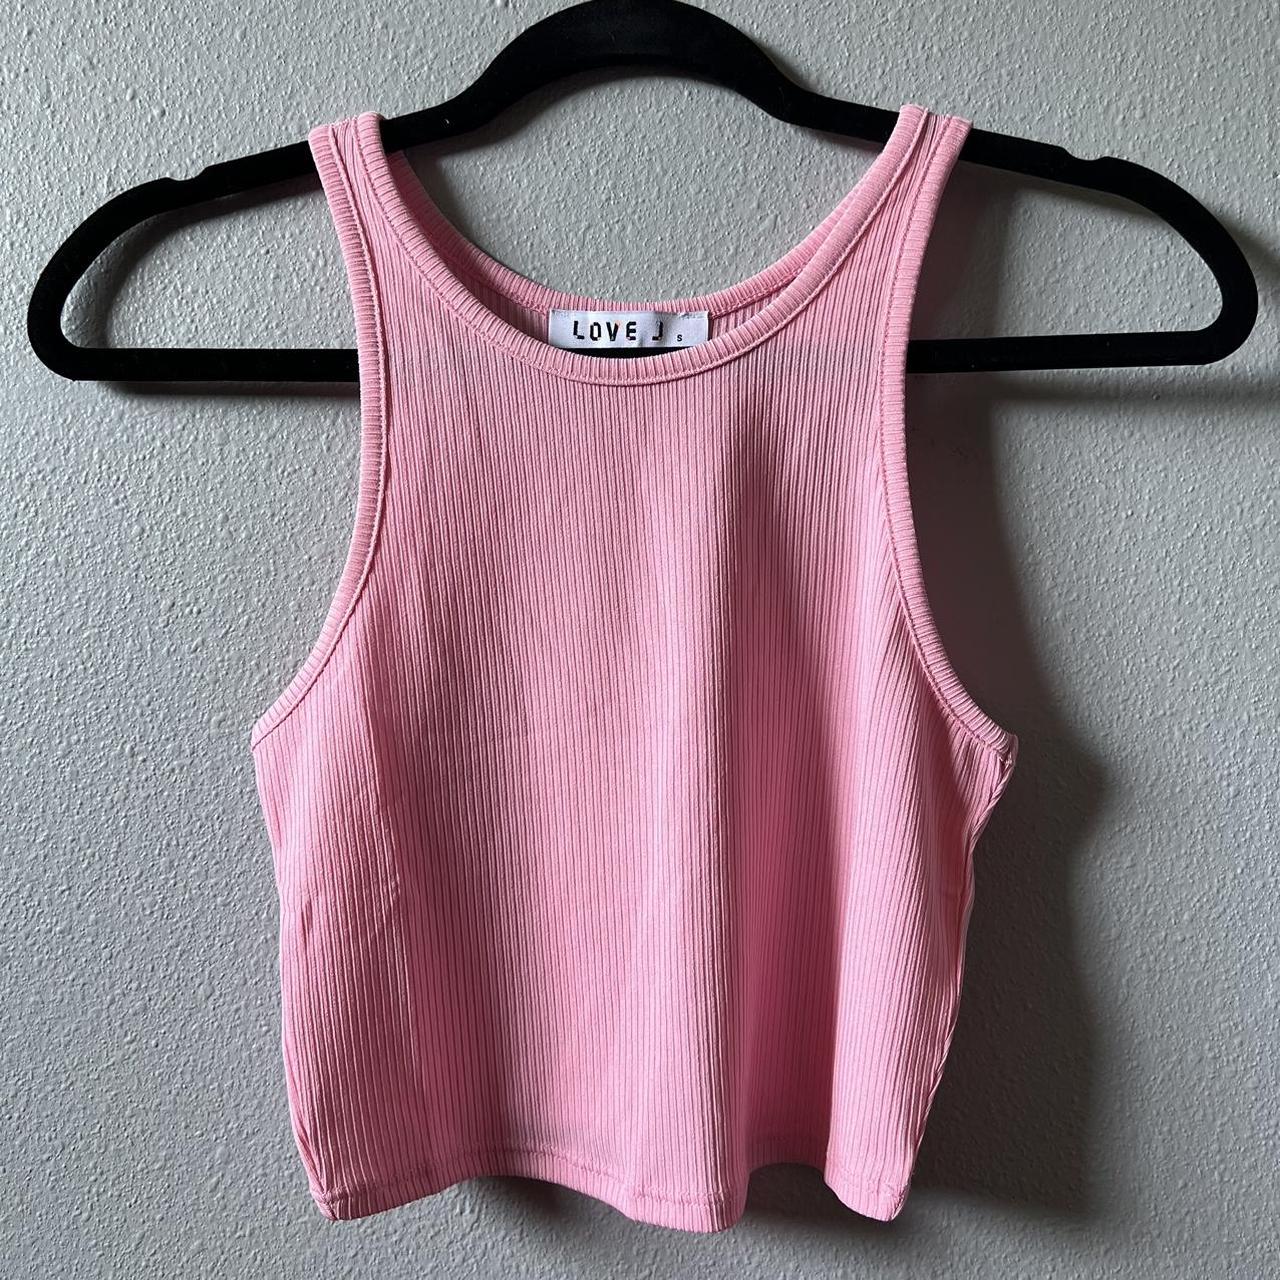 Love J Women's Pink Nightwear | Depop